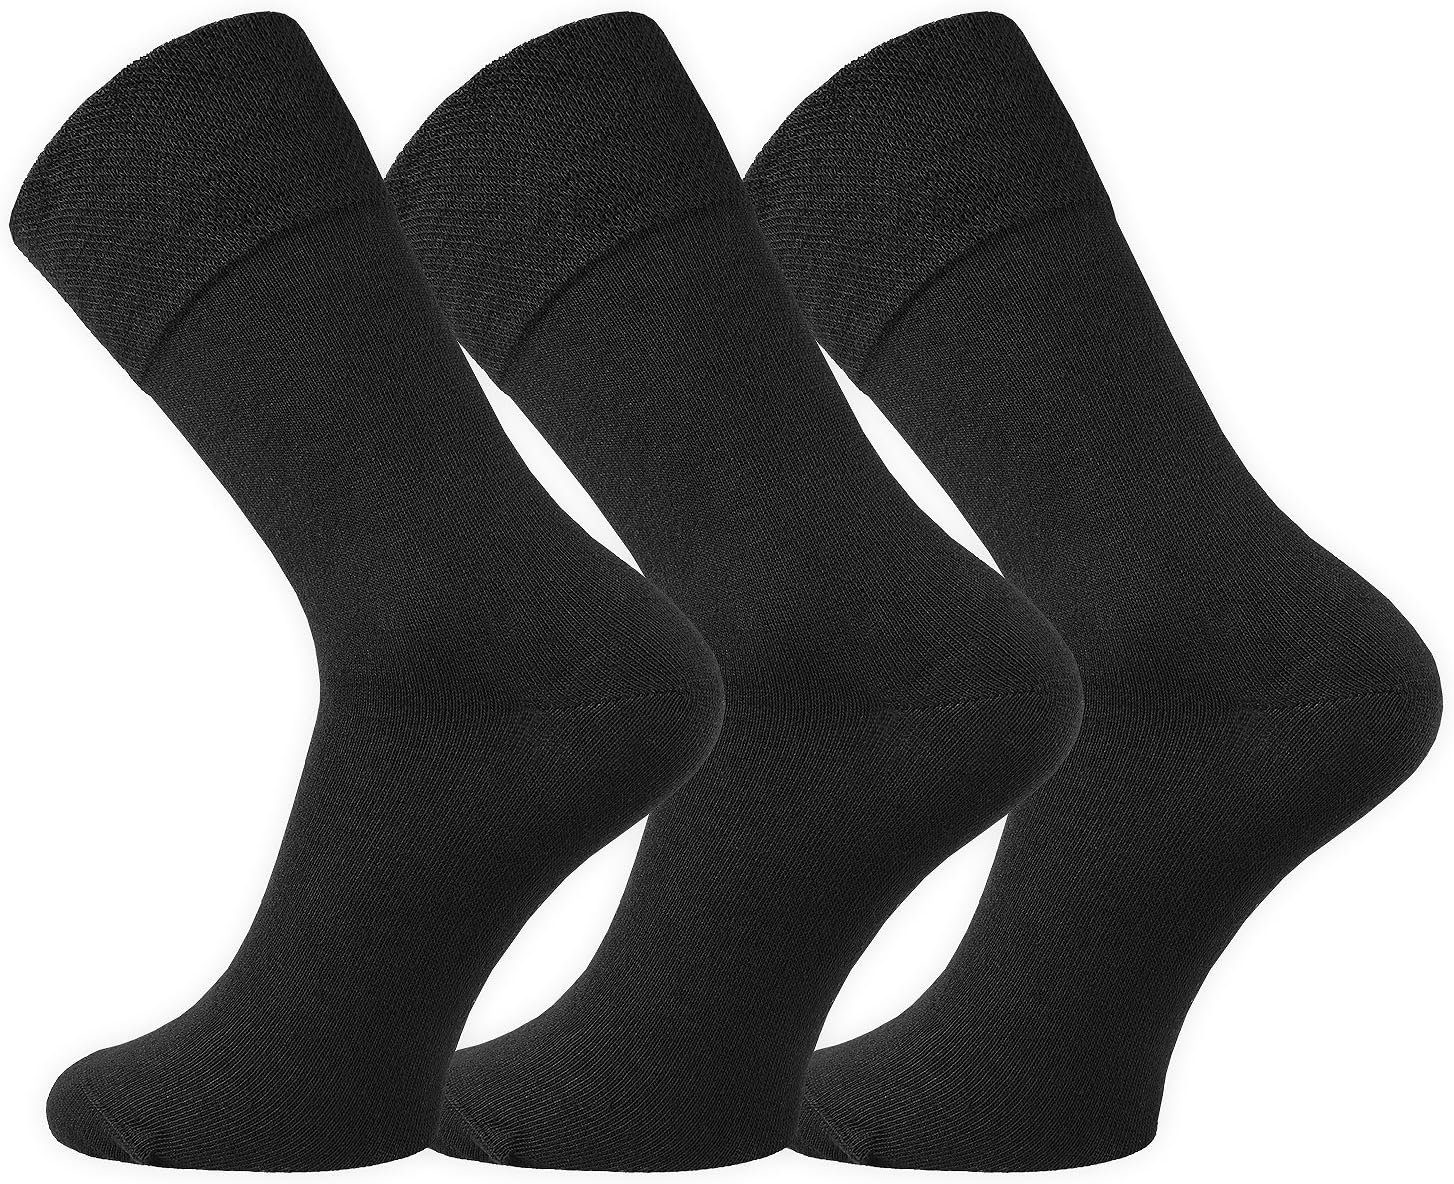 FussFreunde Basicsocken 6 Paar Baumwoll-Socken mit breitem Komfort Piqué-Bund Schwarz